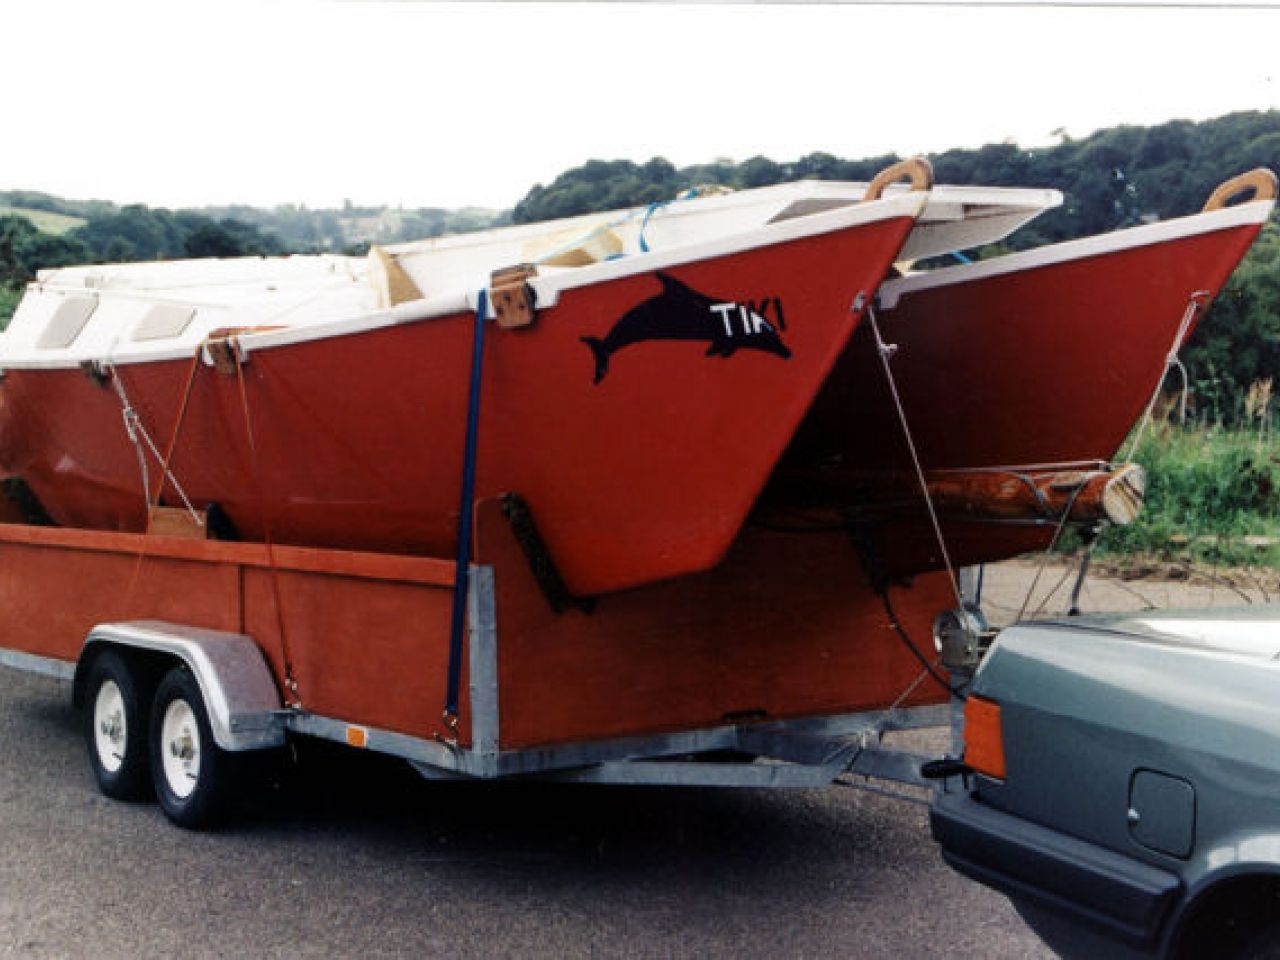 Double canoe hulls on a trailer